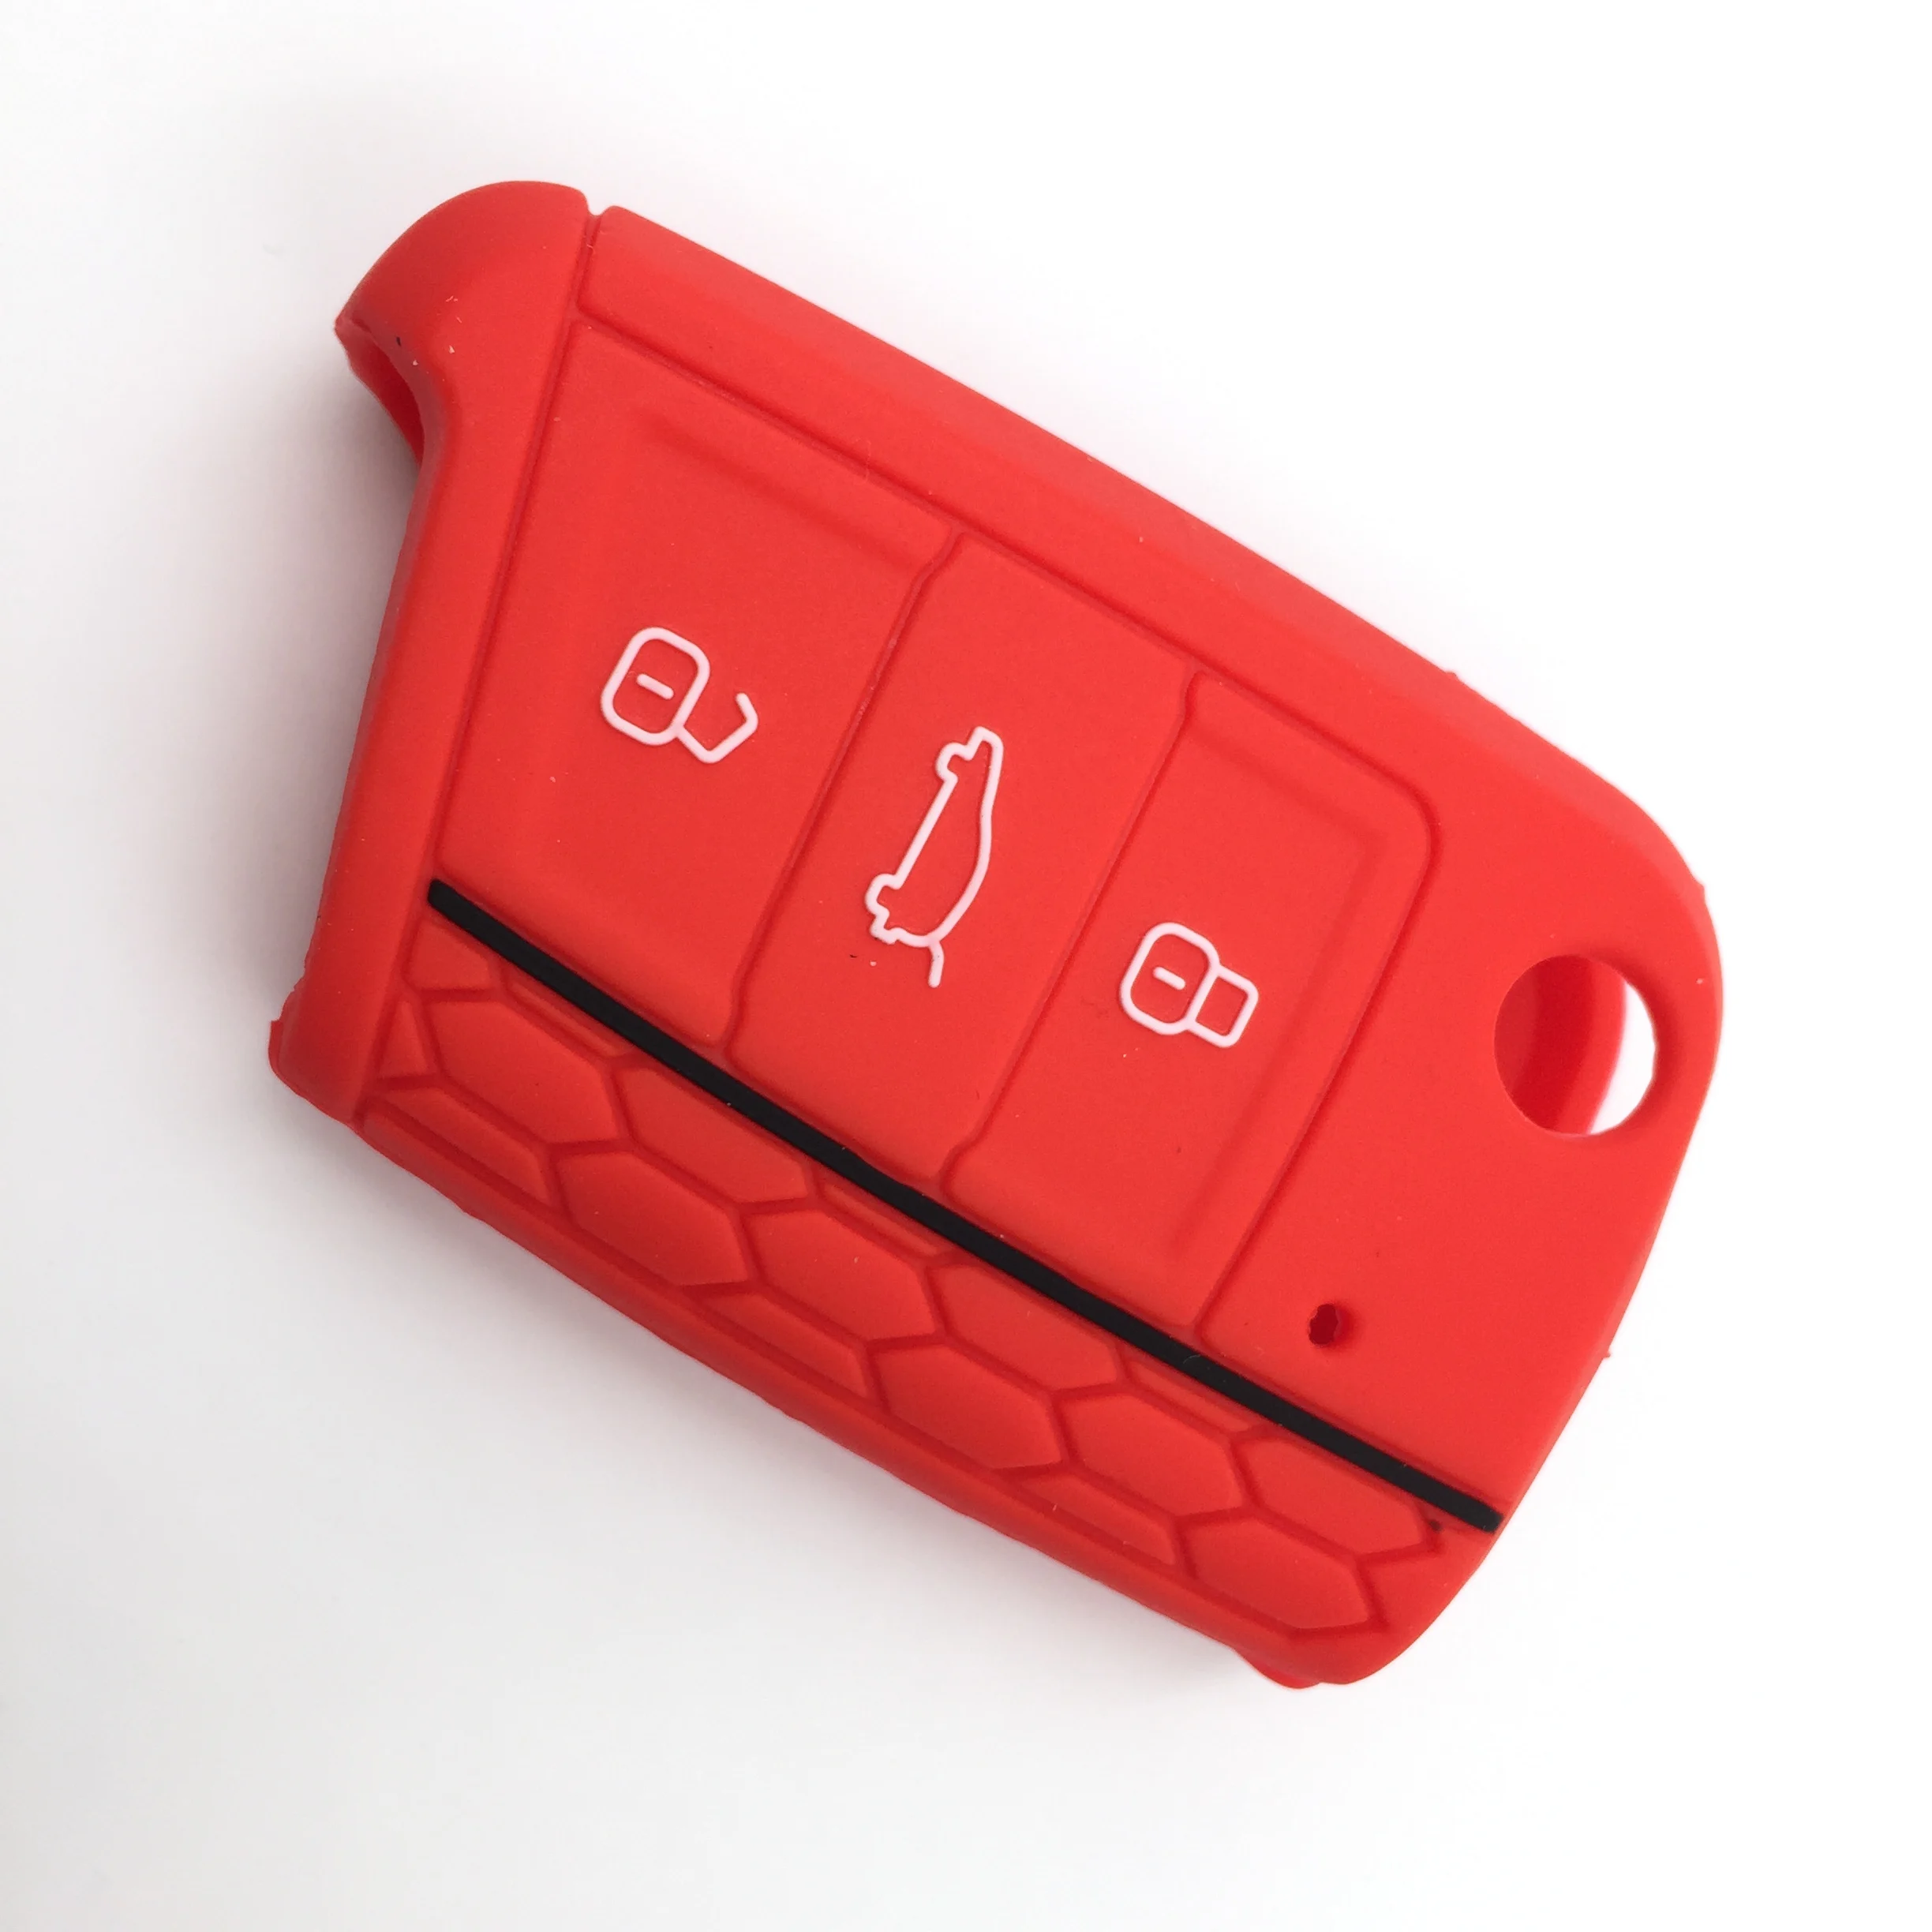 Автомобильный Стайлинг силикагель ключ протектор Чехлы Чехол Набор кожи для Golf 7 Touran L Sportsvan Lamando 3 кнопки дистанционного брелока - Название цвета: Красный